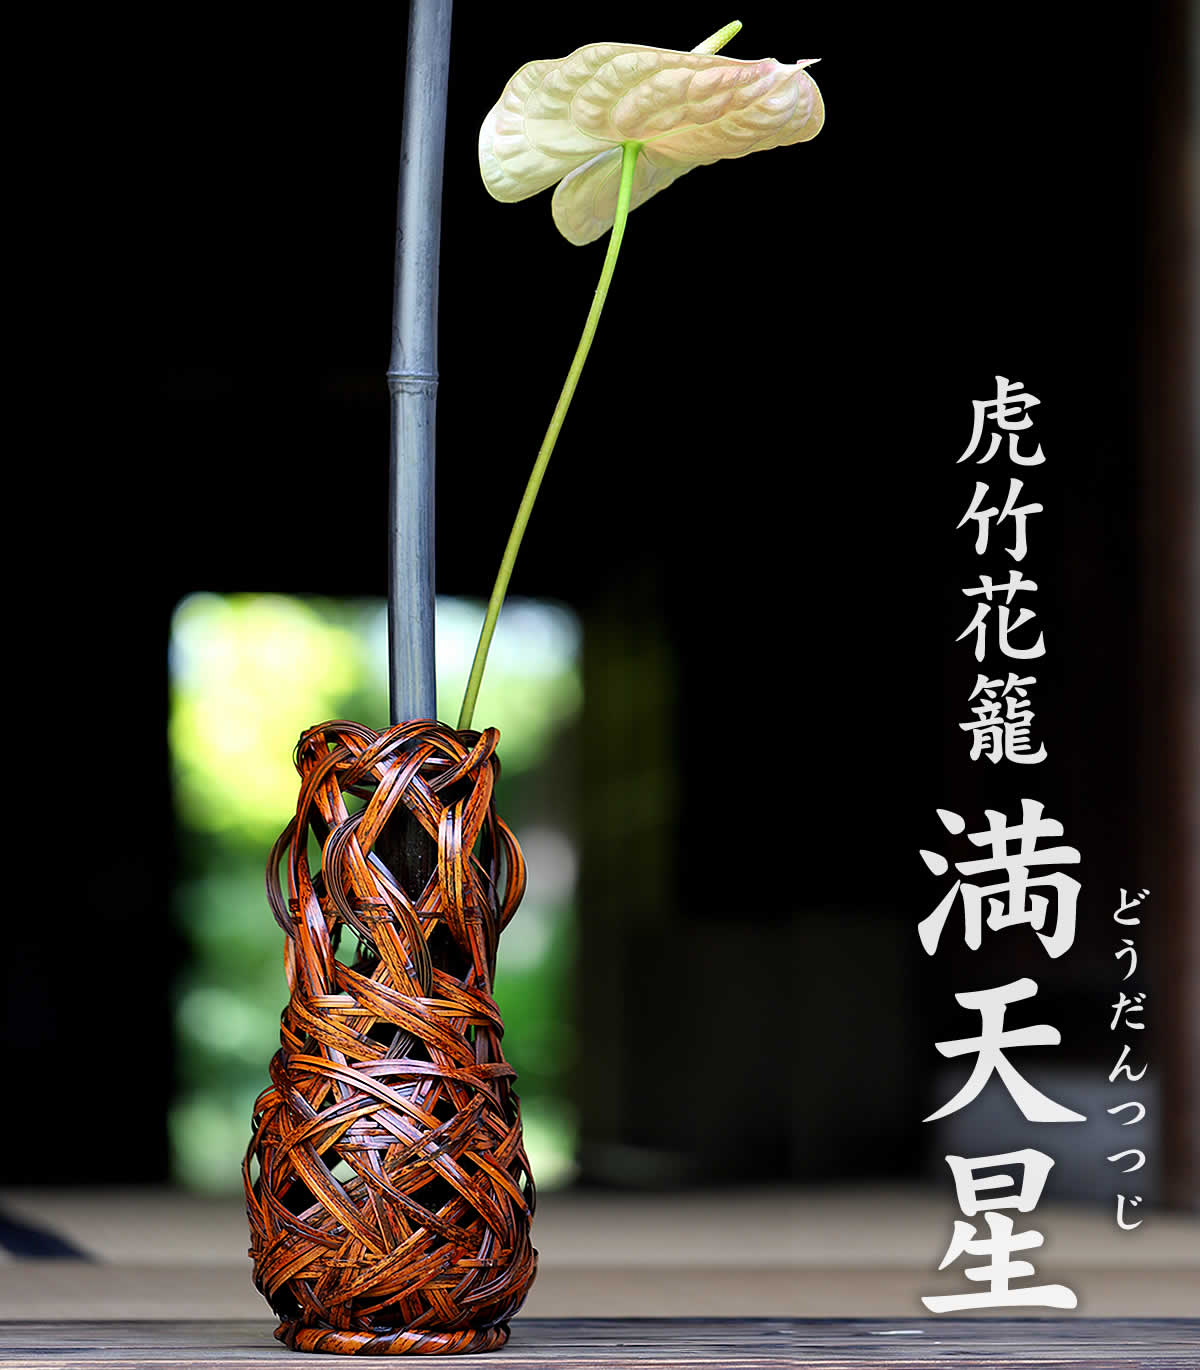 虎竹花籠 満天星（どうだんつつじ）は、日本唯一の虎斑竹を繊細に編み込んだ花かごです。